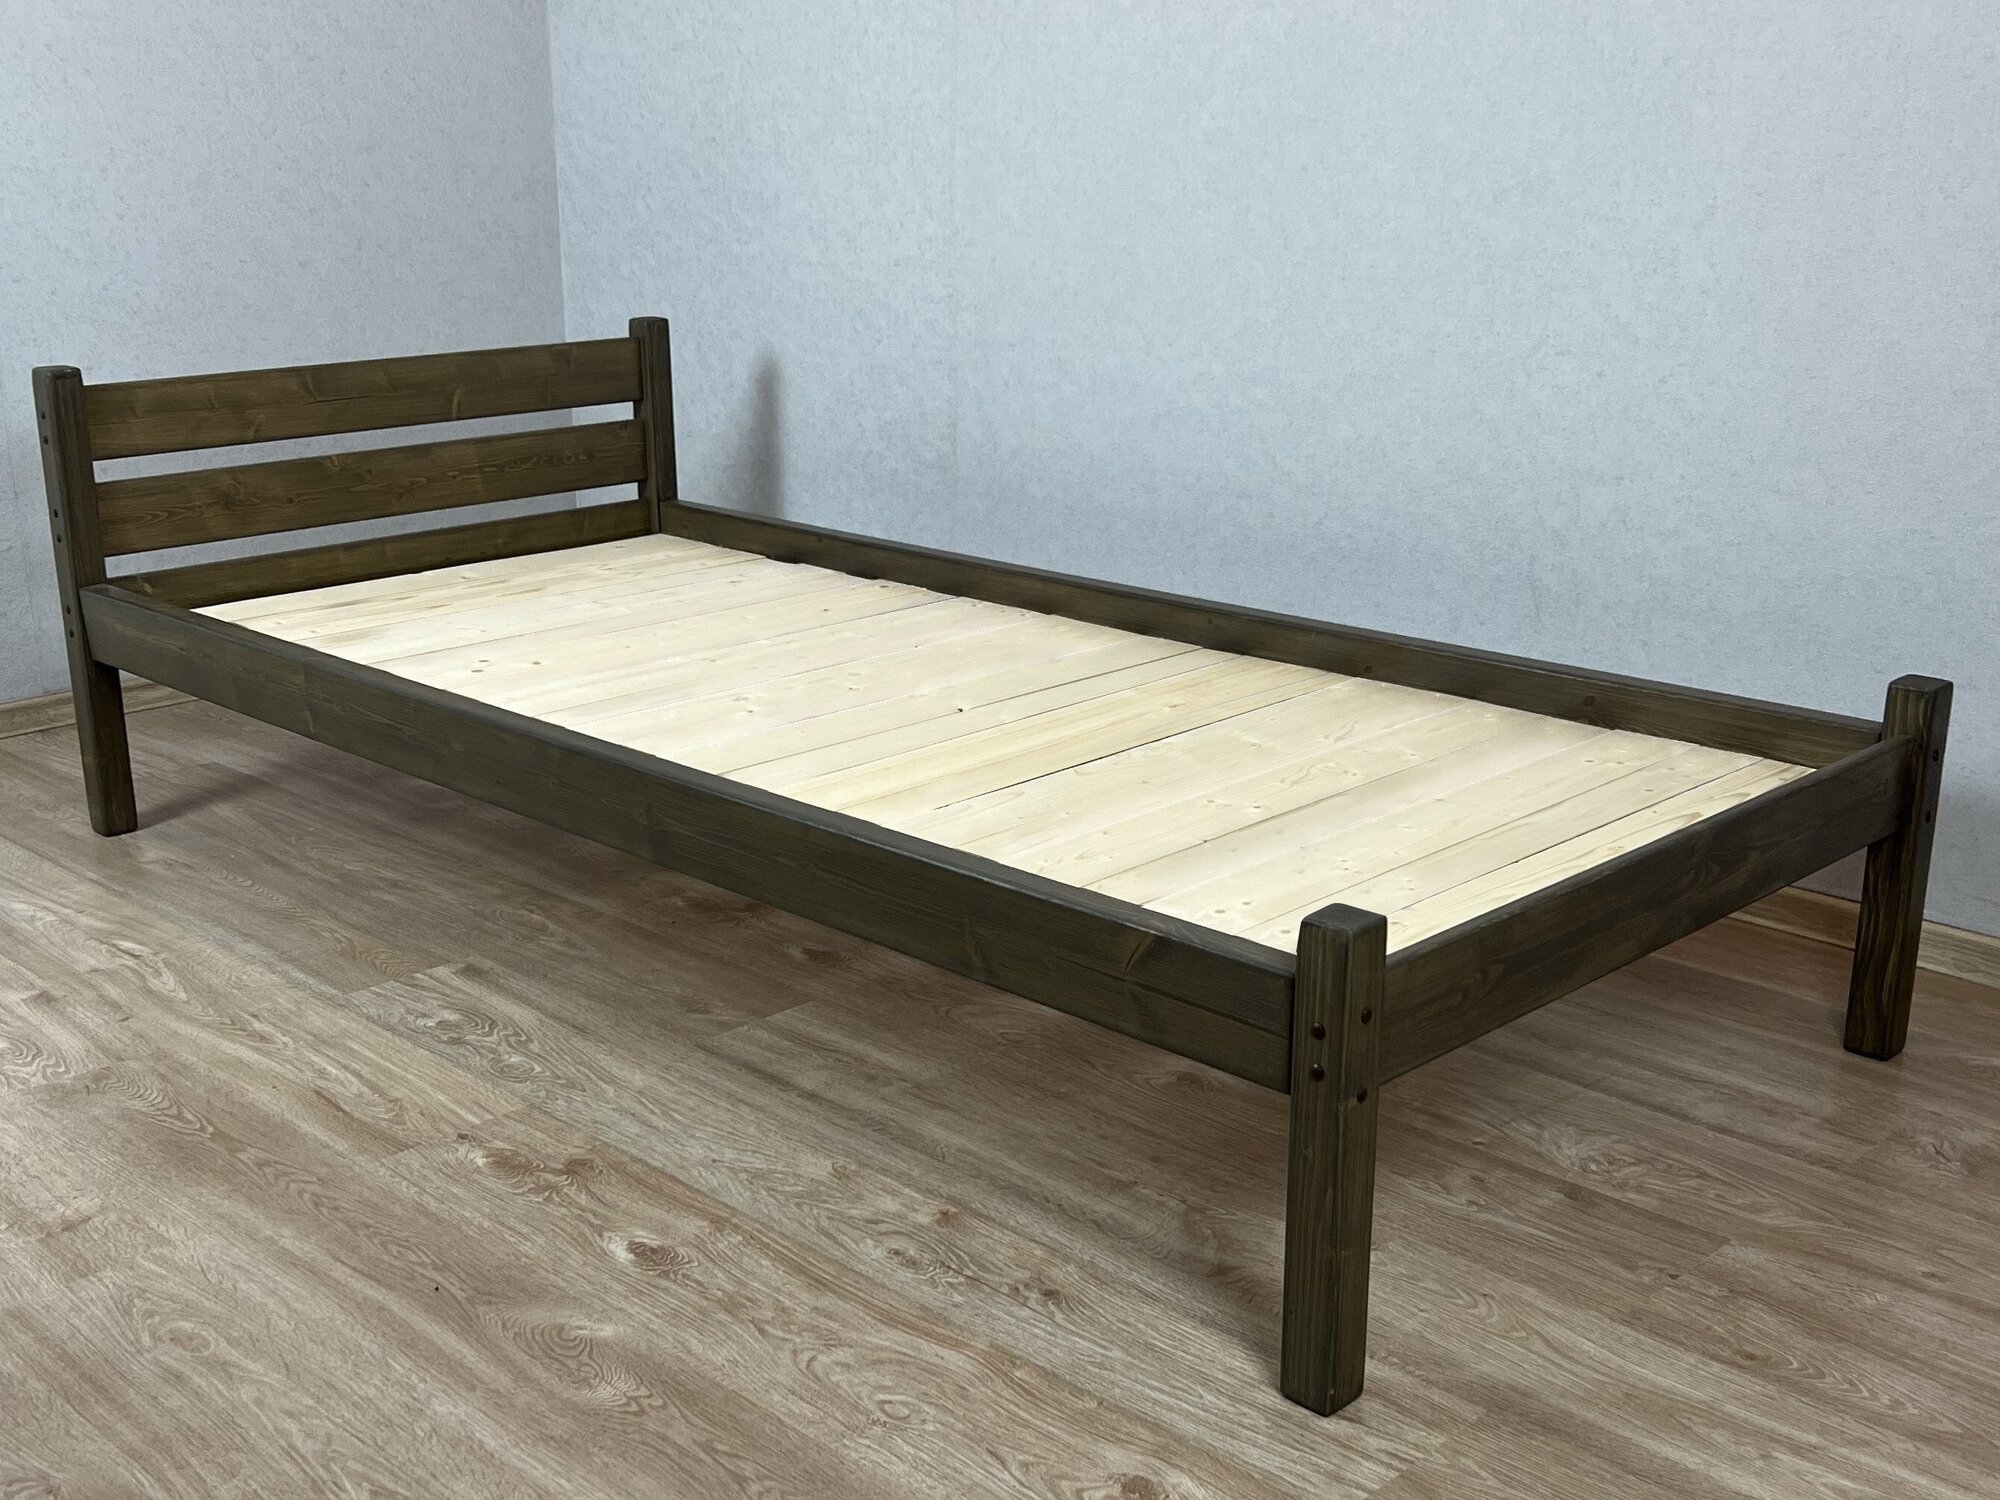 Кровать односпальная Классика из массива сосны со сплошным основанием, 200х90 см (габариты 210х100), цвет венге